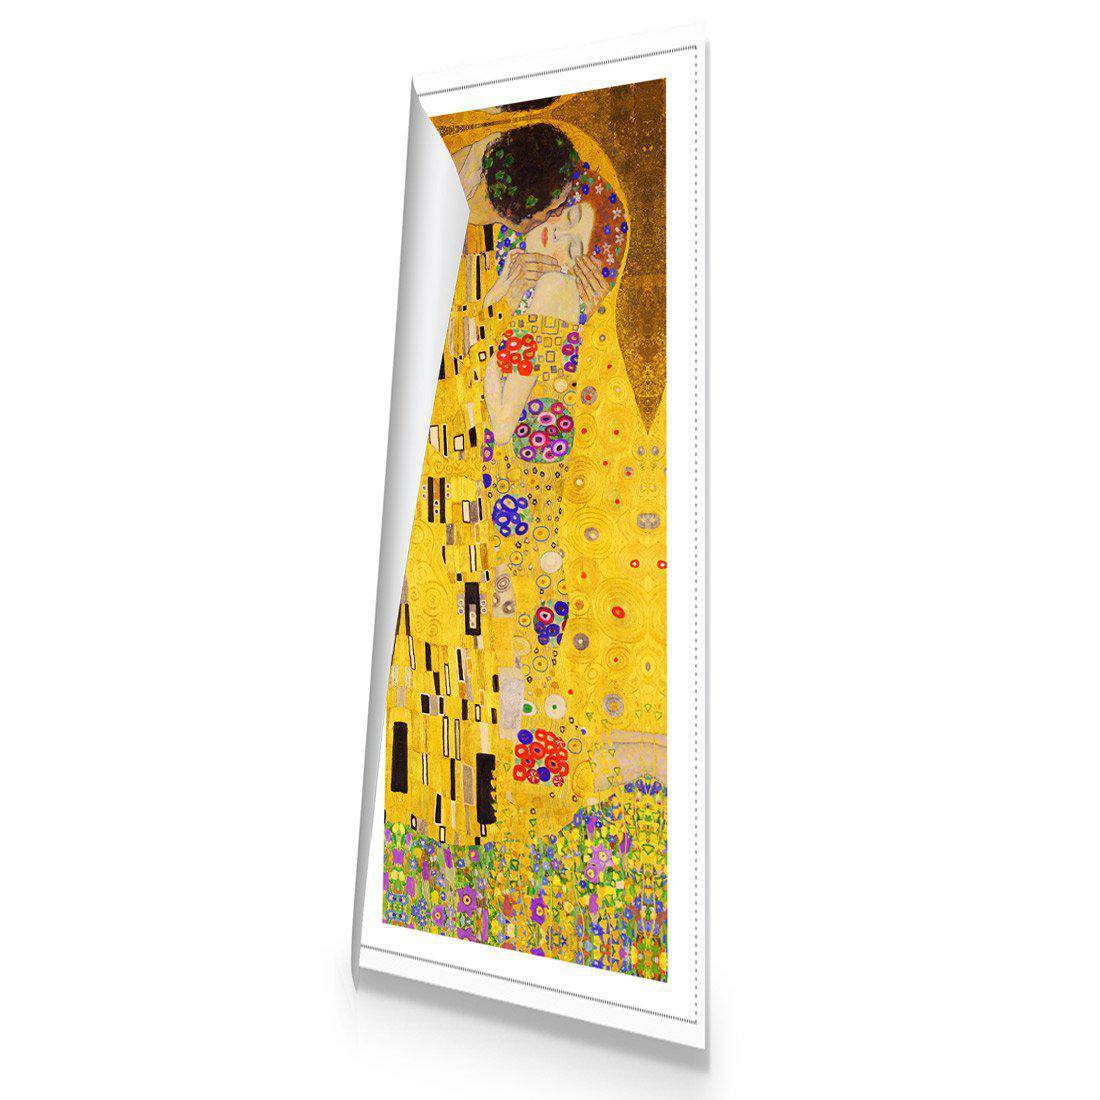 The Kiss by Klimt Canvas Art-Canvas-Wall Art Designs-60x20cm-Rolled Canvas-Wall Art Designs